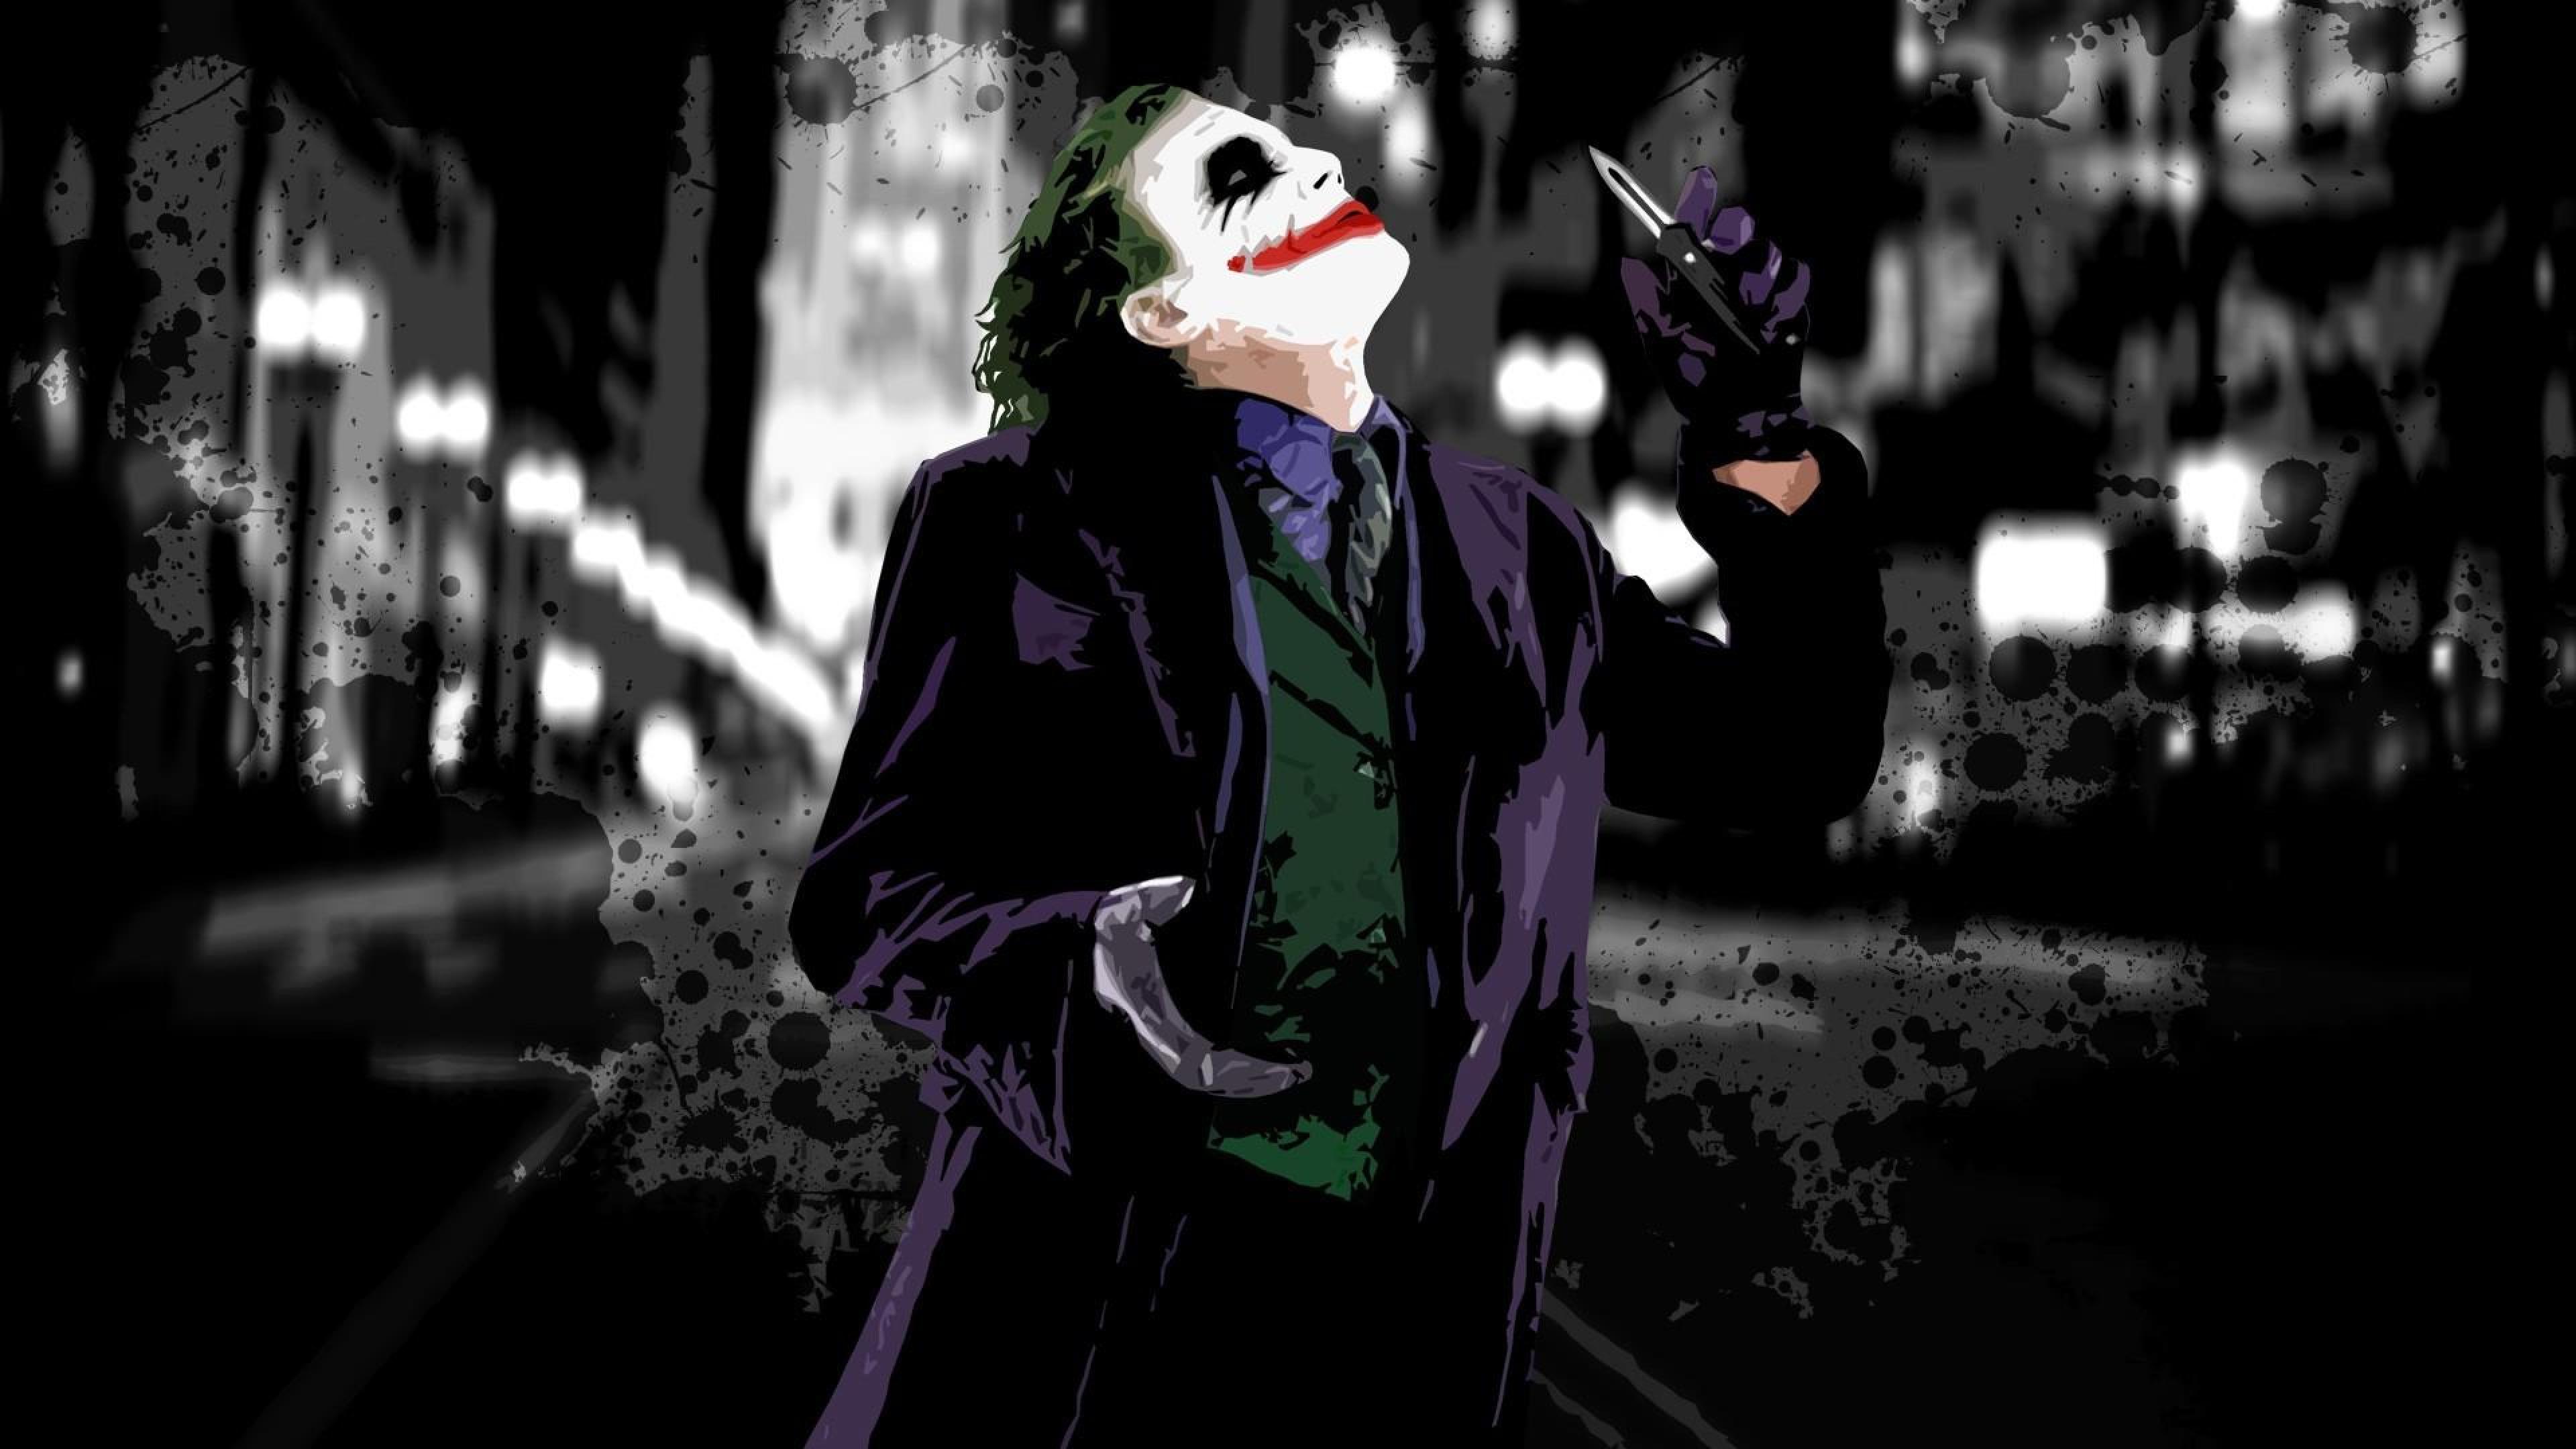 cavaliere oscuro joker wallpaper hd,supercattivo,personaggio fittizio,burlone,buio,disegno grafico